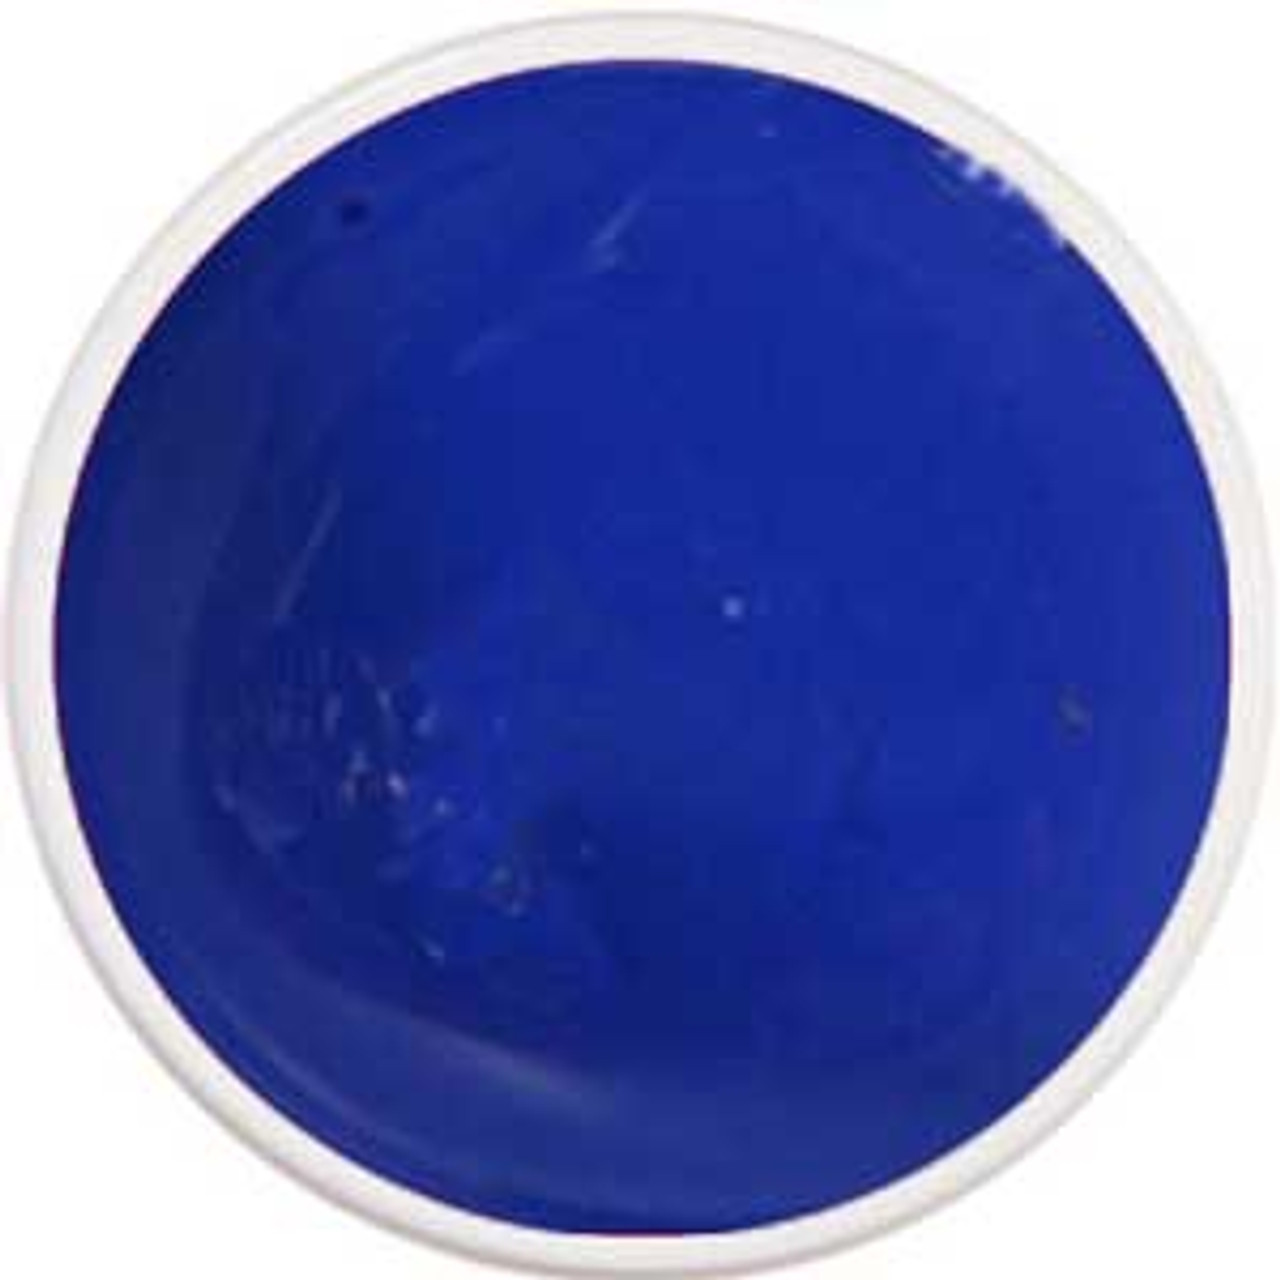 LE Light Elegance Blue Art Gel -  15 gms